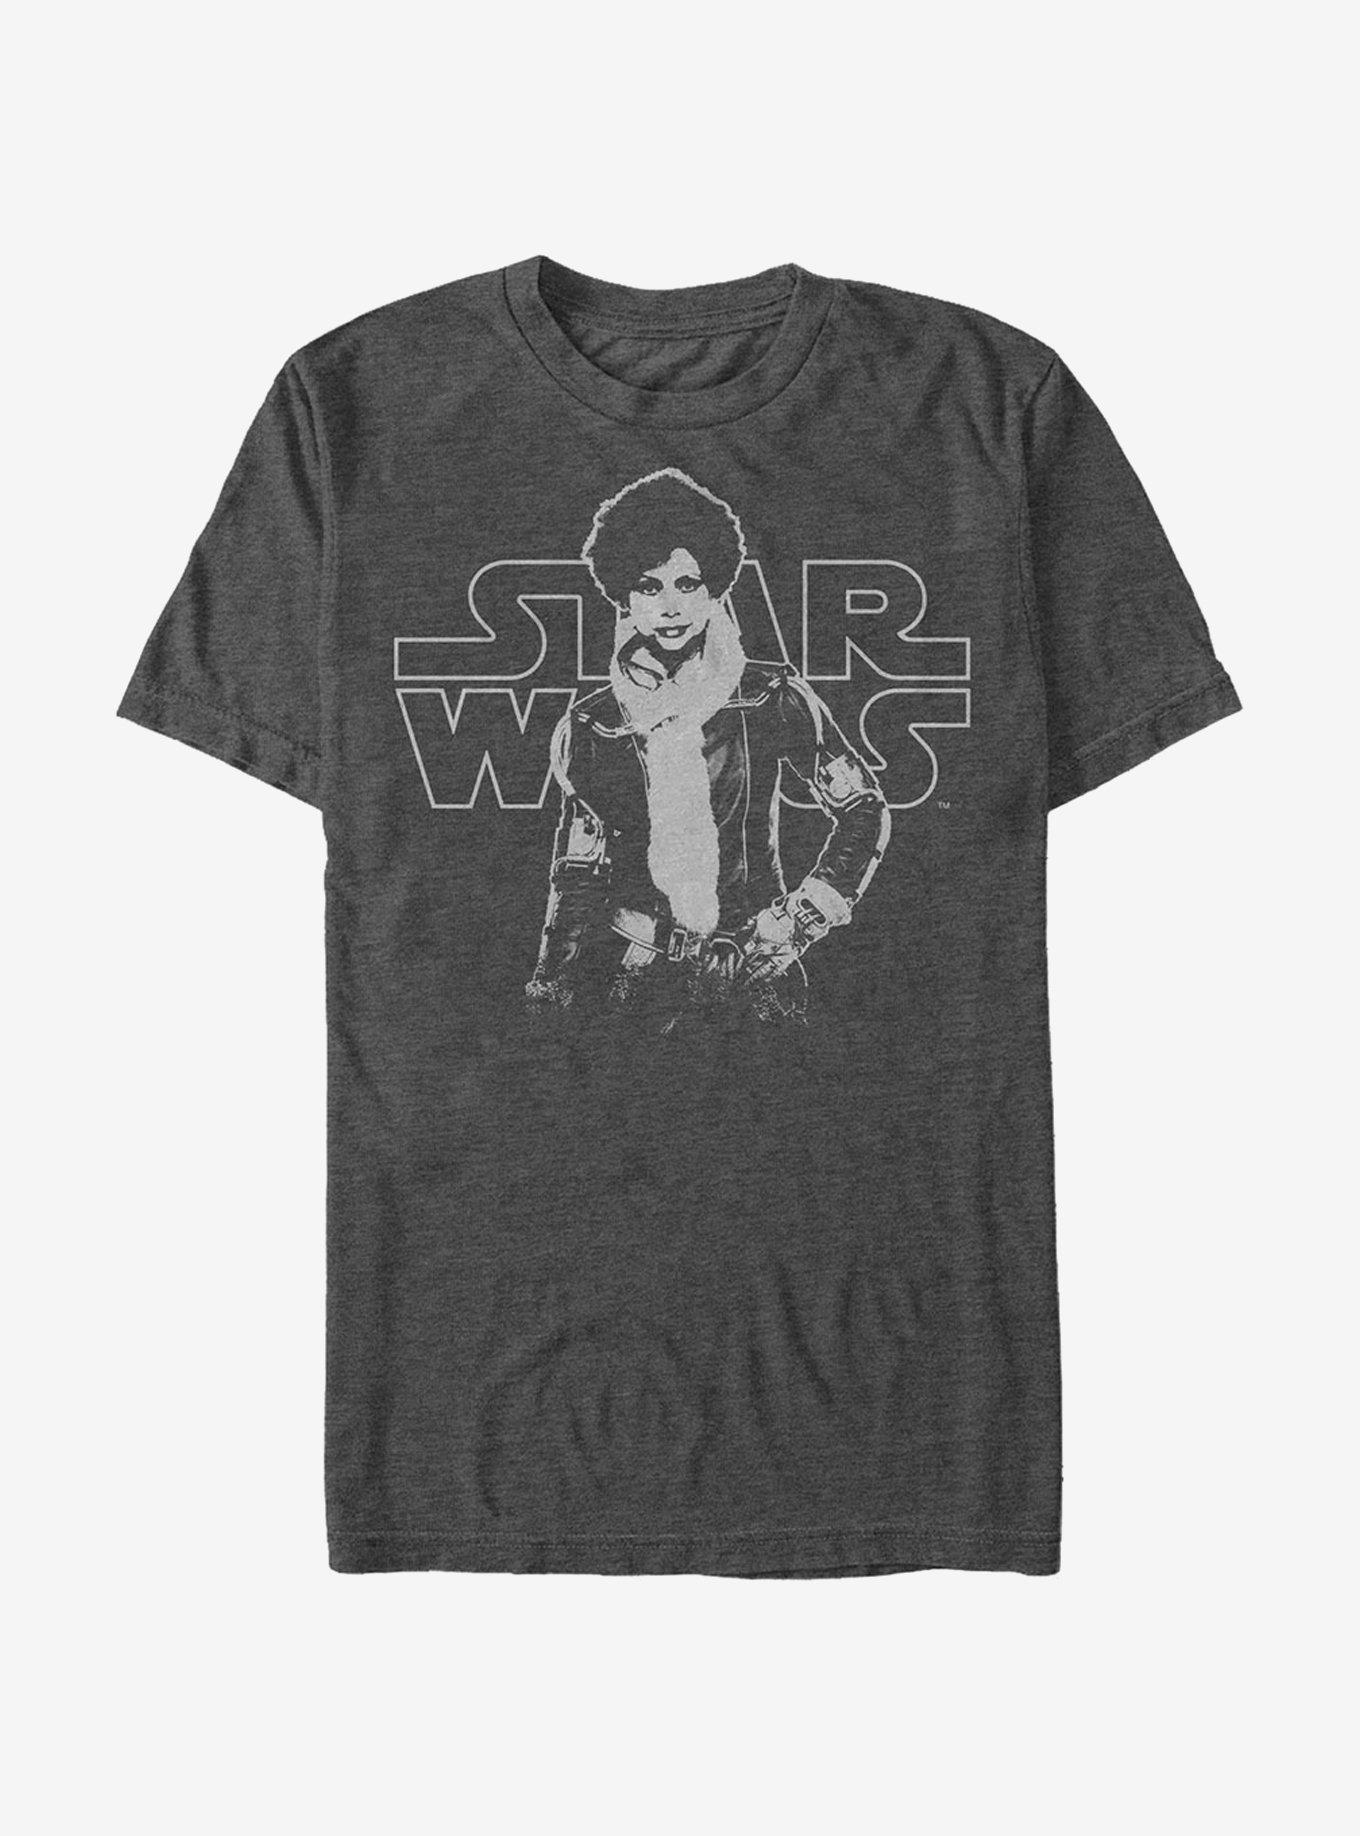 Star Wars Val Pose T-Shirt, CHAR HTR, hi-res